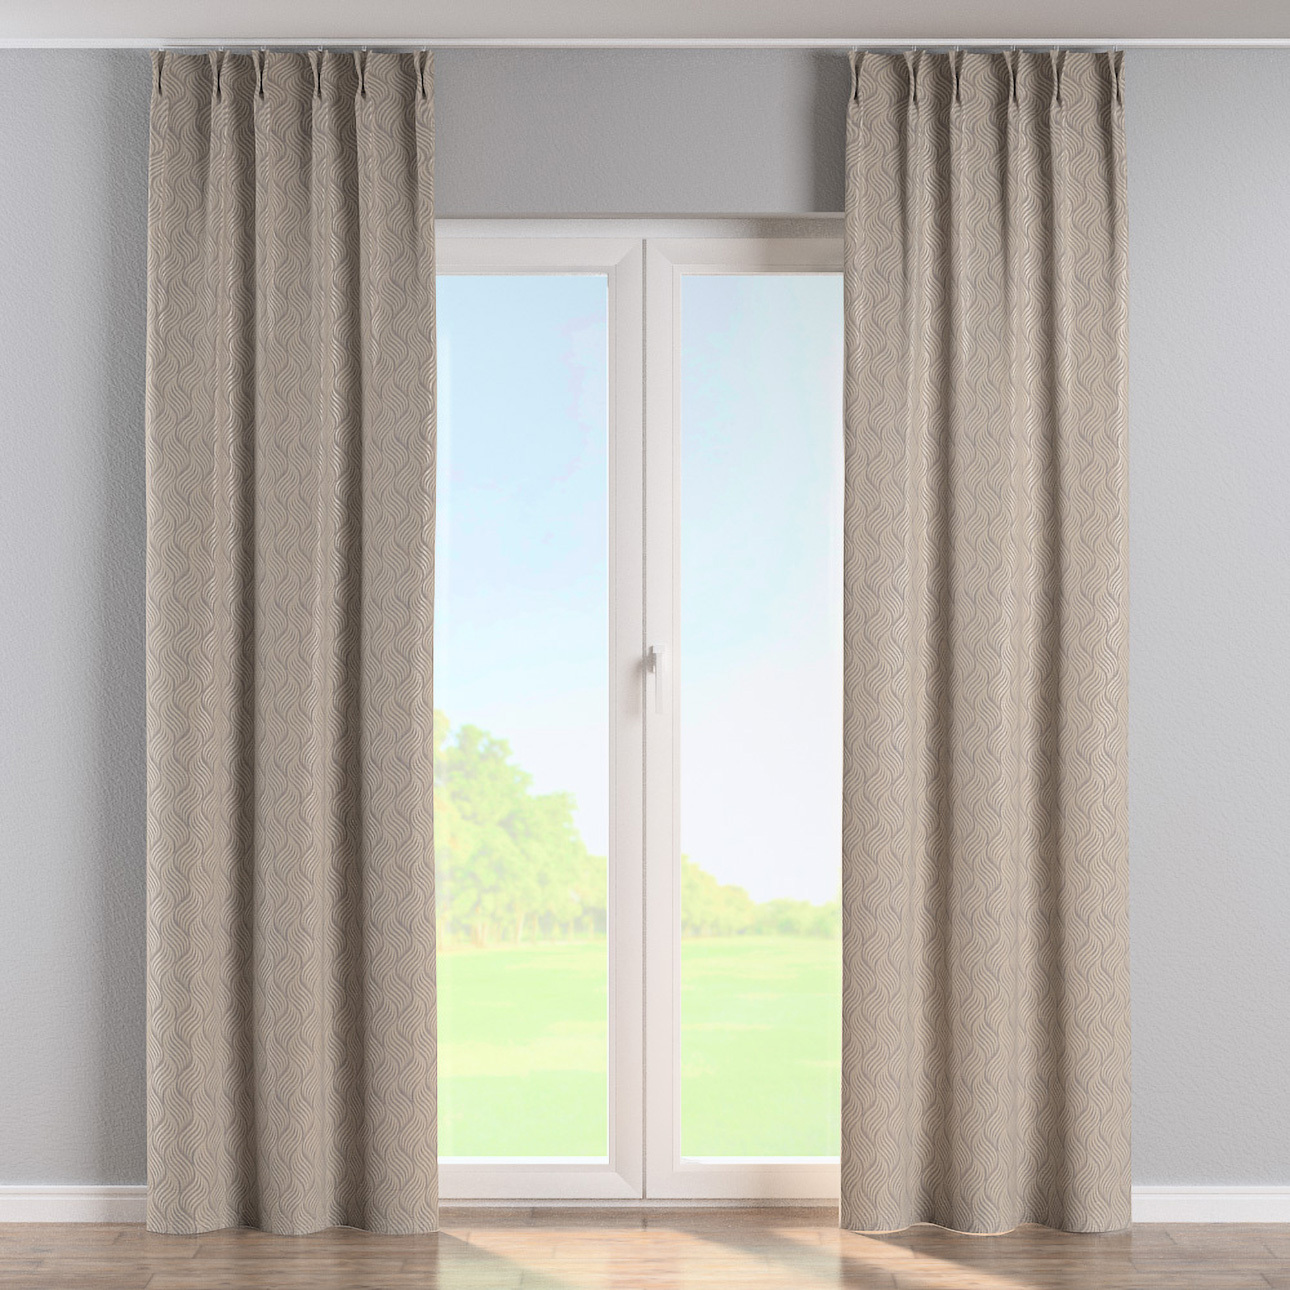 Vorhang mit flämischen 2-er Falten, grau-beige, Imperia Premium (144-09) günstig online kaufen